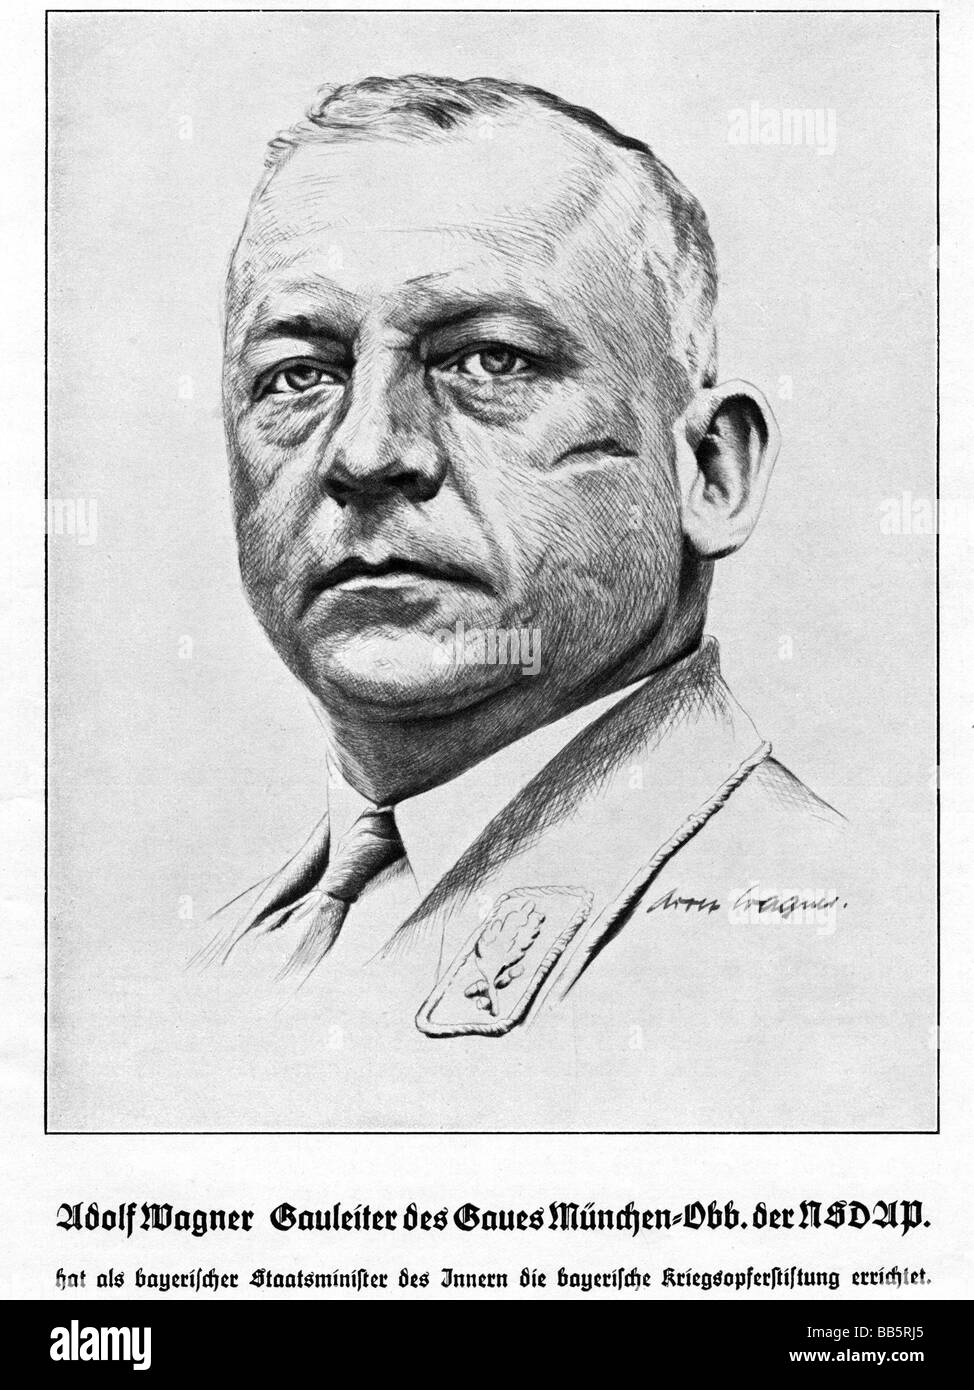 Wagner, Adolf, 1.10.1890 - 12.4.1944, politico tedesco (NSDAP), galloista di Monaco-Baviera superiore 1.11.1930 - 12.4.1944, ritratto, disegno, 1930s, , Foto Stock